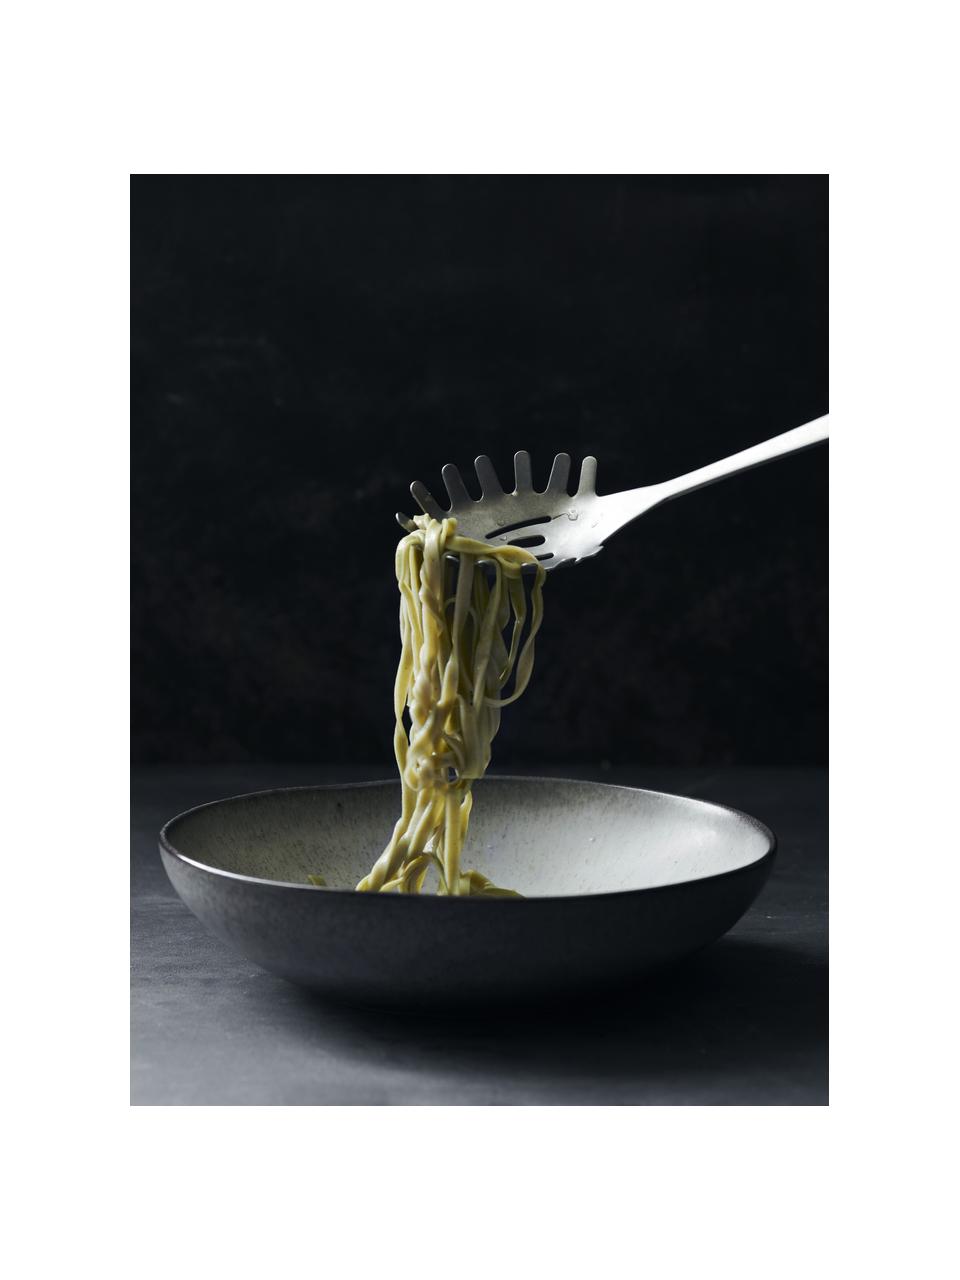 Cuchara para espaguetis plateado mate Daily, Acero inoxidable

La cubertería está hecha de acero inoxidable. Por tanto, es duradera, inoxidable y resistente a las bacterias., Plateado mate, L 29 cm